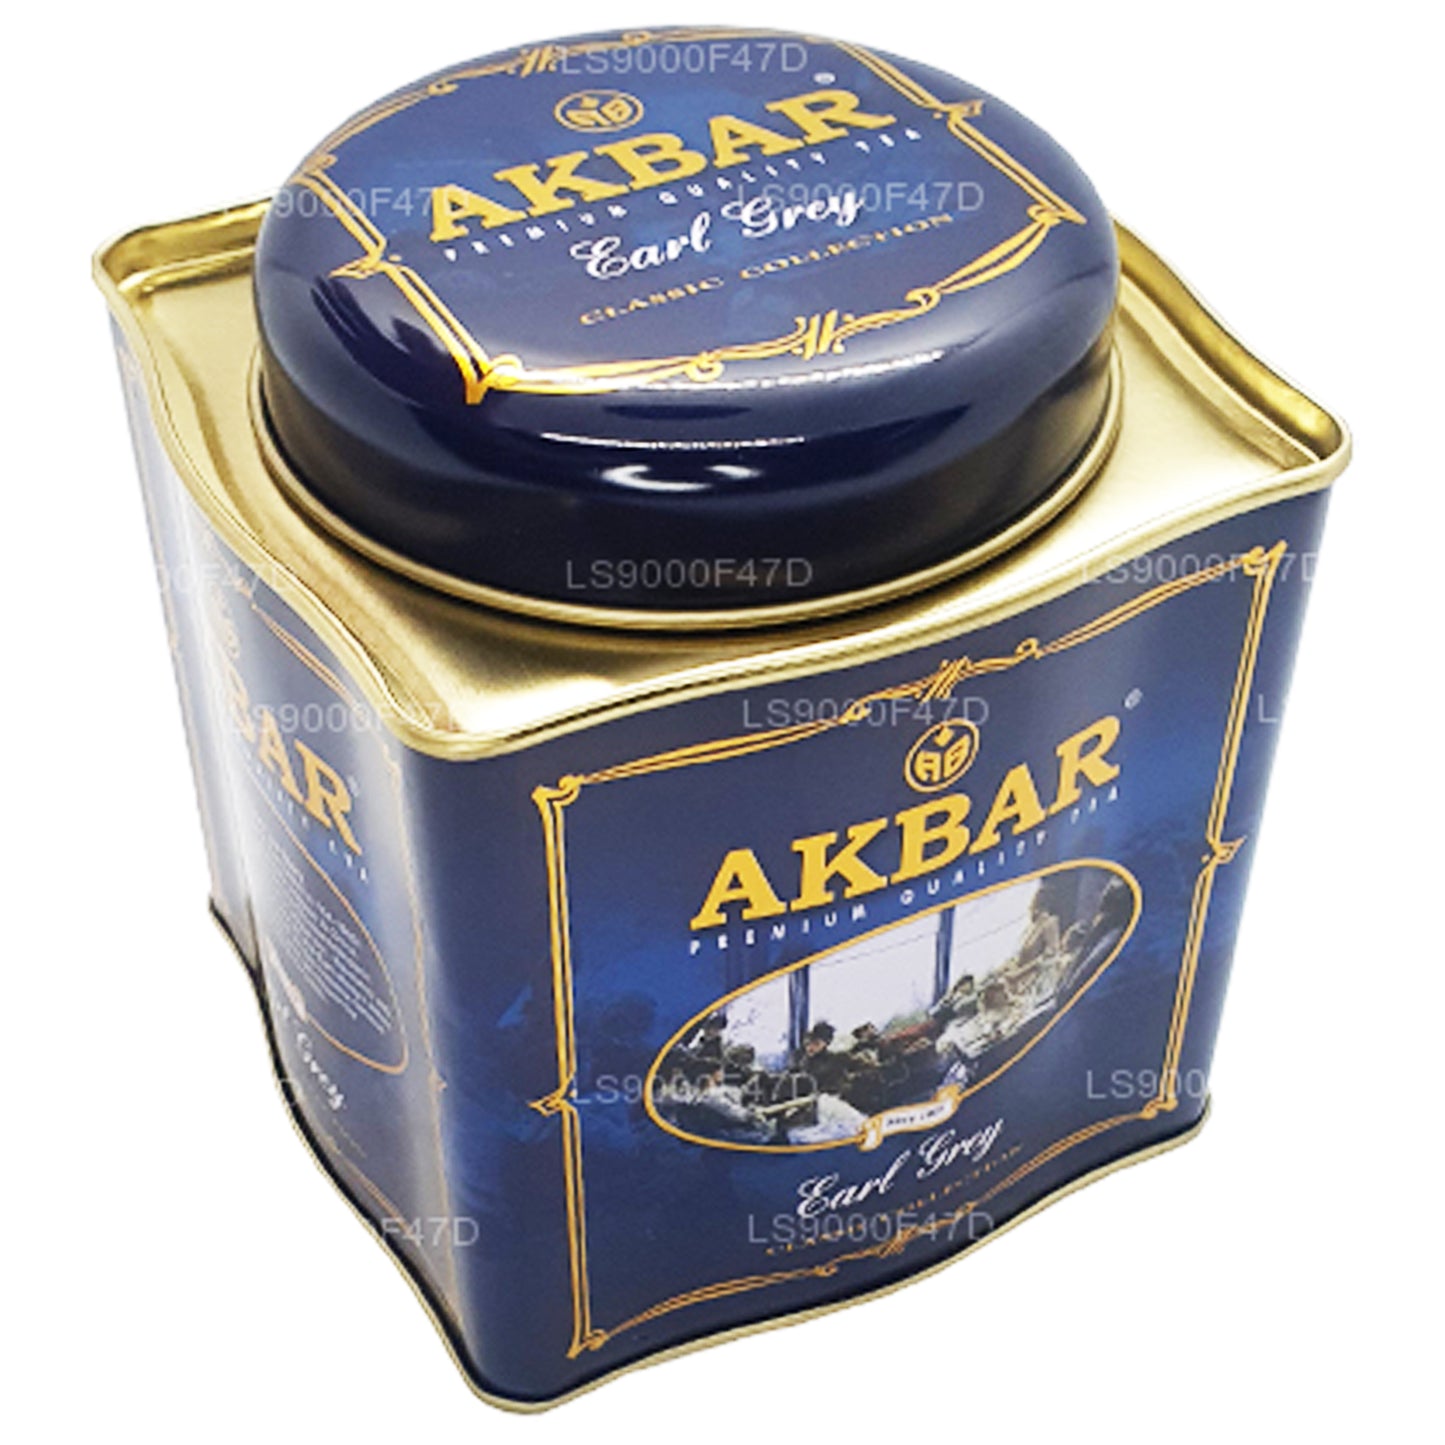 Akbar Classic Earl Grey Leaf Tea (250g) Tin